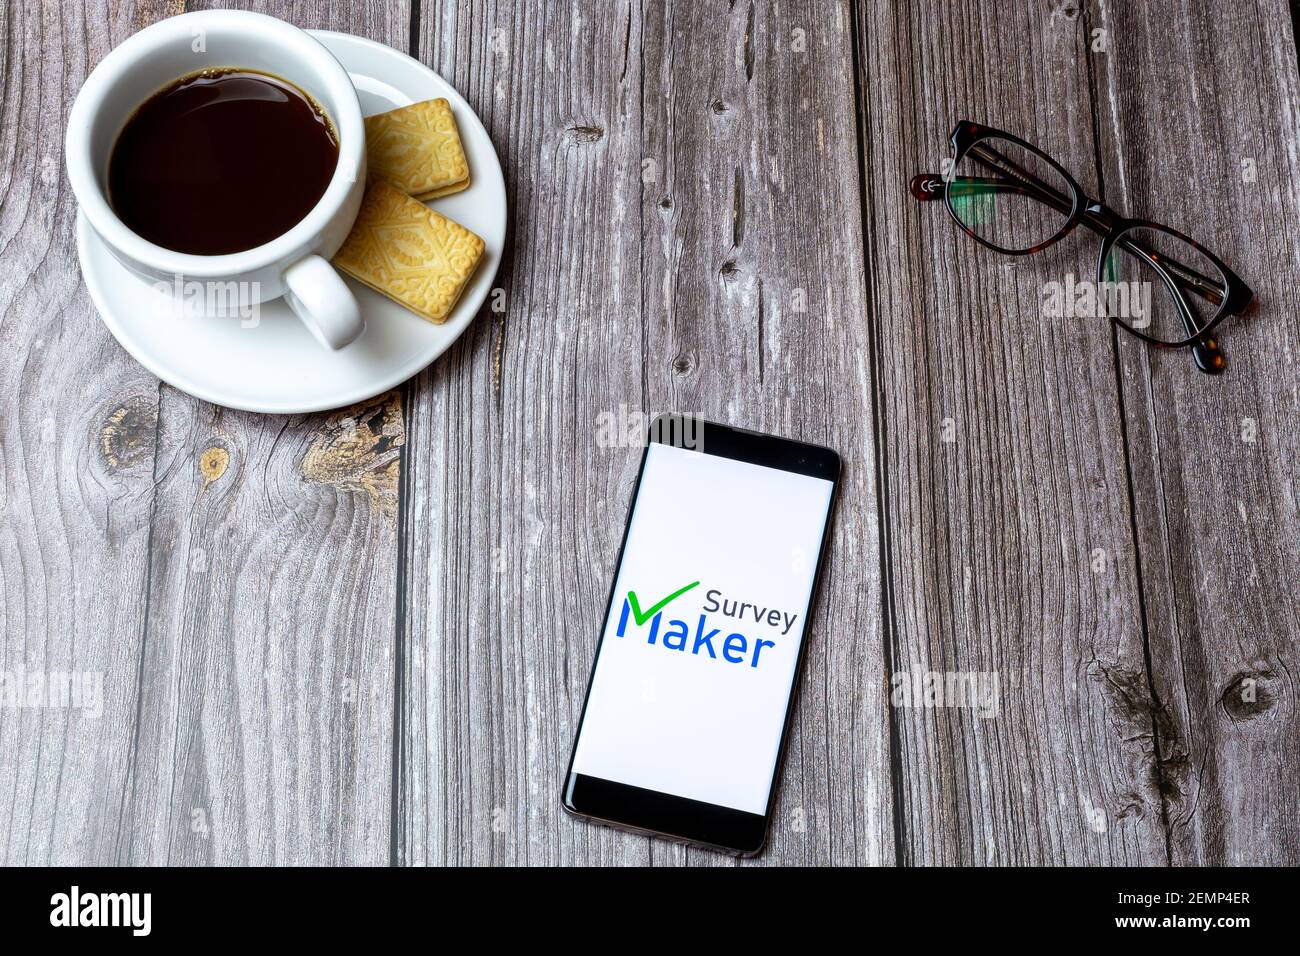 Un telefono cellulare o cellulare su un tavolo di legno Con l'app Survey Maker aperta accanto a un caffè e bicchieri Foto Stock